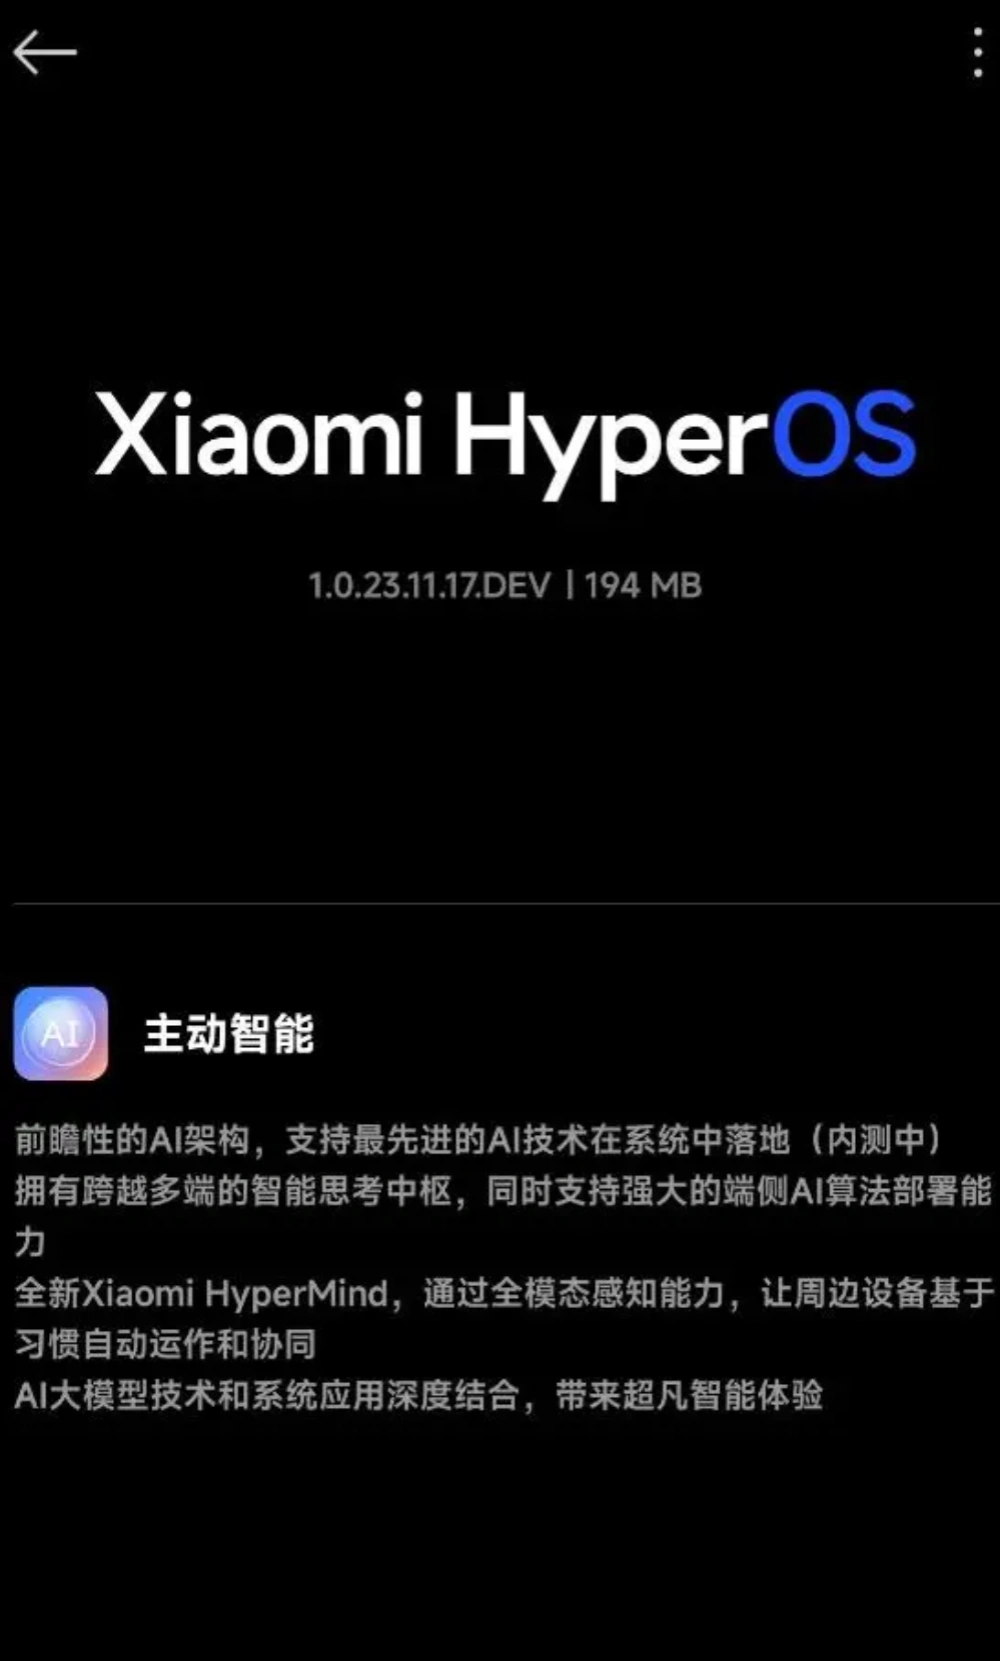 小米14手机推送Xiaomi HyperOS开发版更新,新增智能思考中枢HyperMind